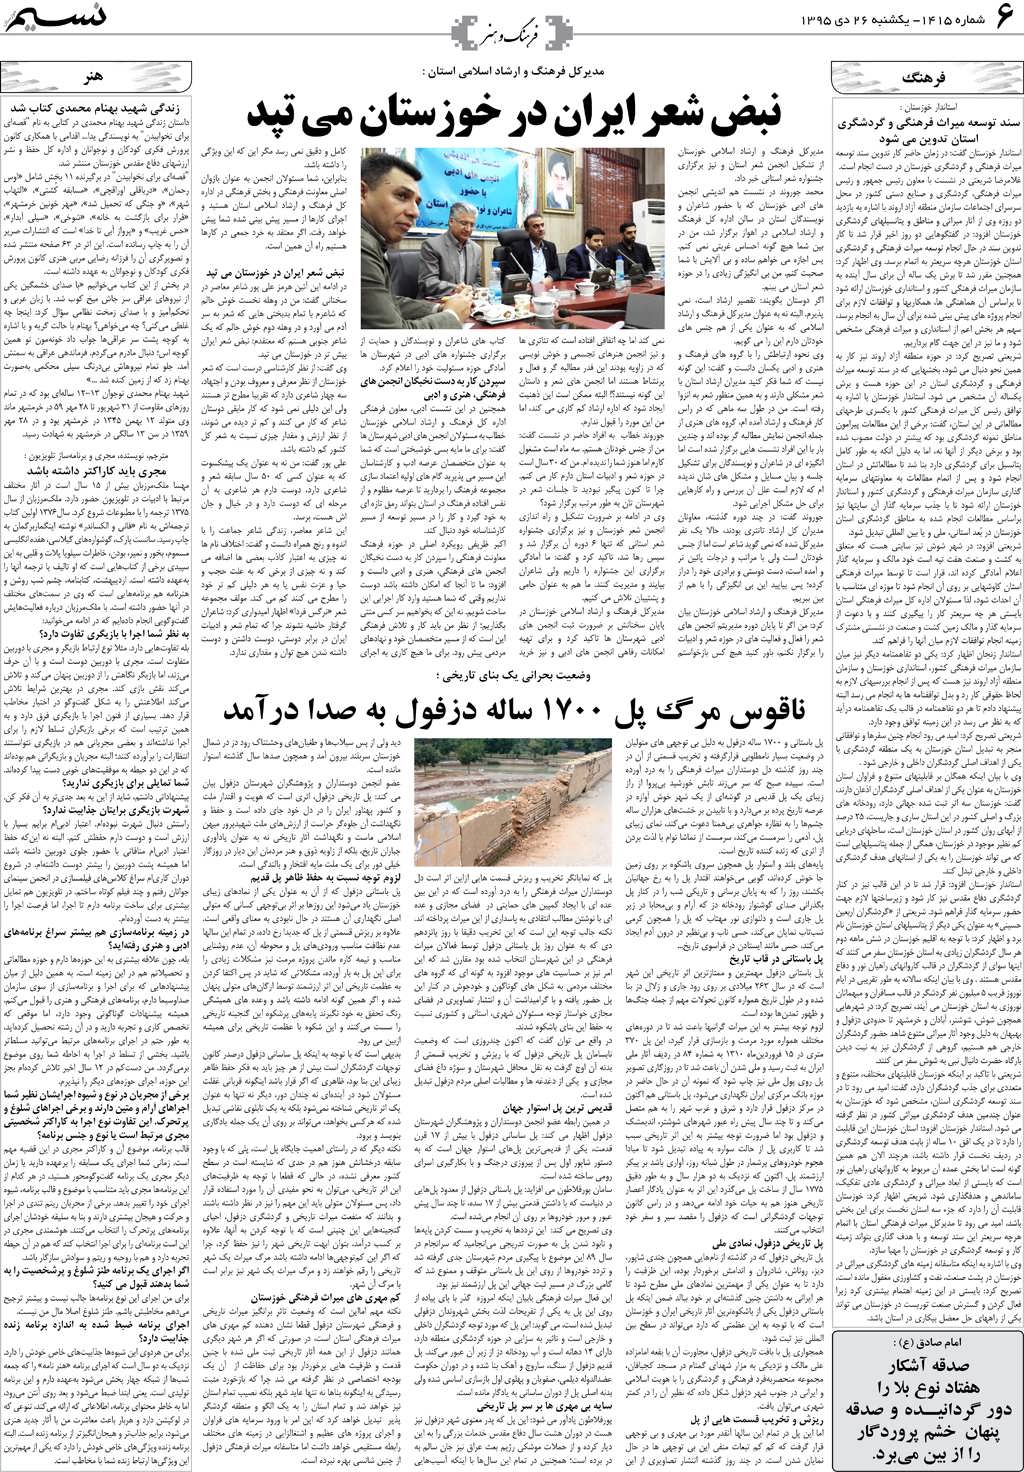 صفحه فرهنگ و هنر روزنامه نسیم شماره 1415